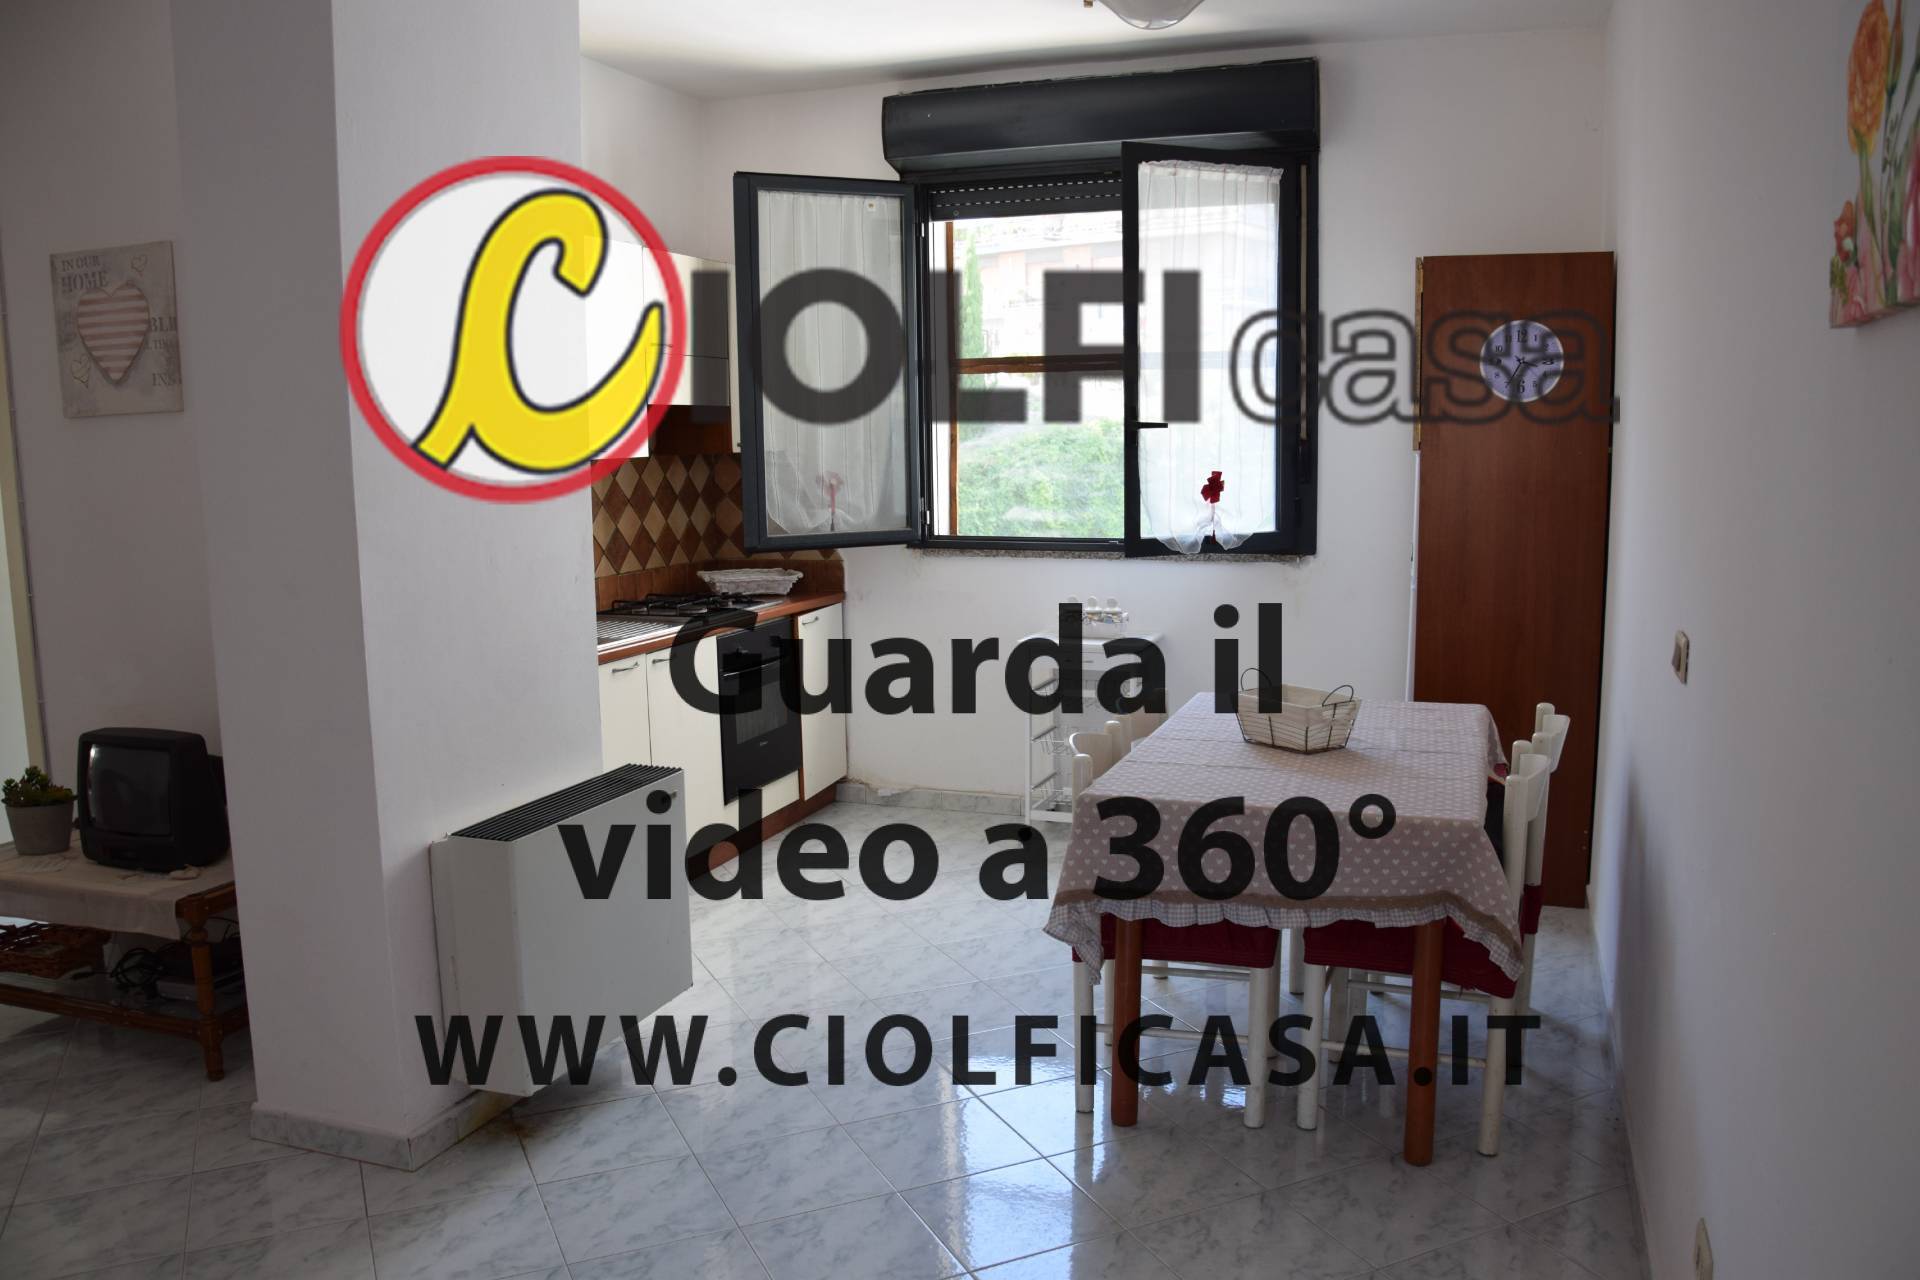 Appartamento in vendita a Cassino, 3 locali, zona Località: Stazioneferroviaria, prezzo € 90.000 | CambioCasa.it